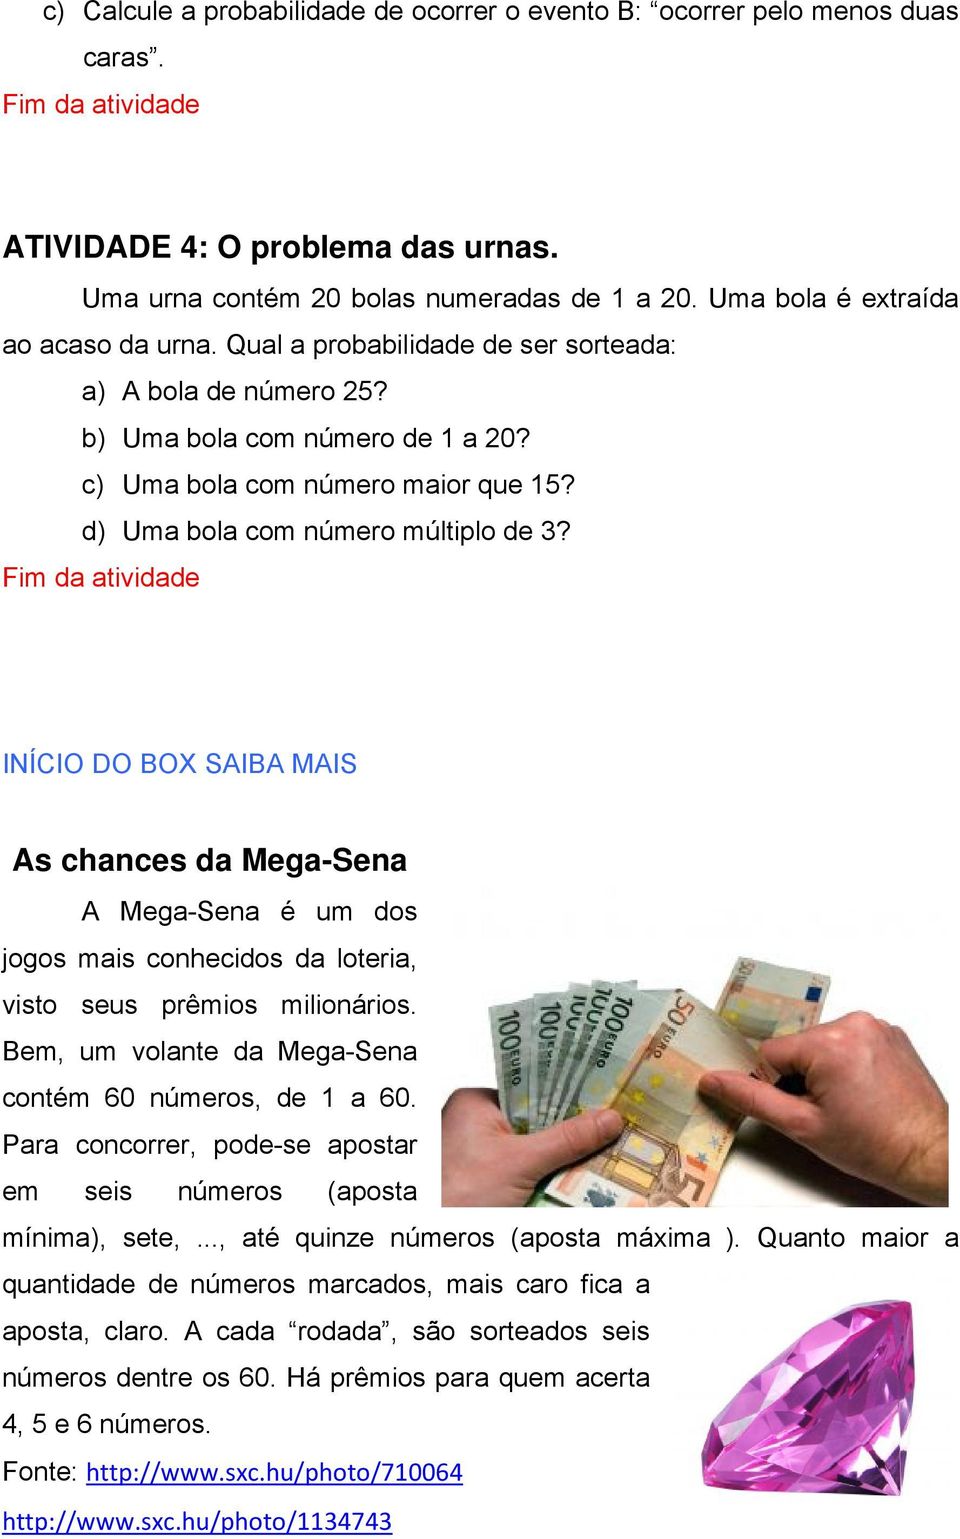 d) Uma bola com número múltiplo de 3? Fim da atividade INÍCIO DO BOX SAIBA MAIS As chances da Mega-Sena A Mega-Sena é um dos jogos mais conhecidos da loteria, visto seus prêmios milionários.